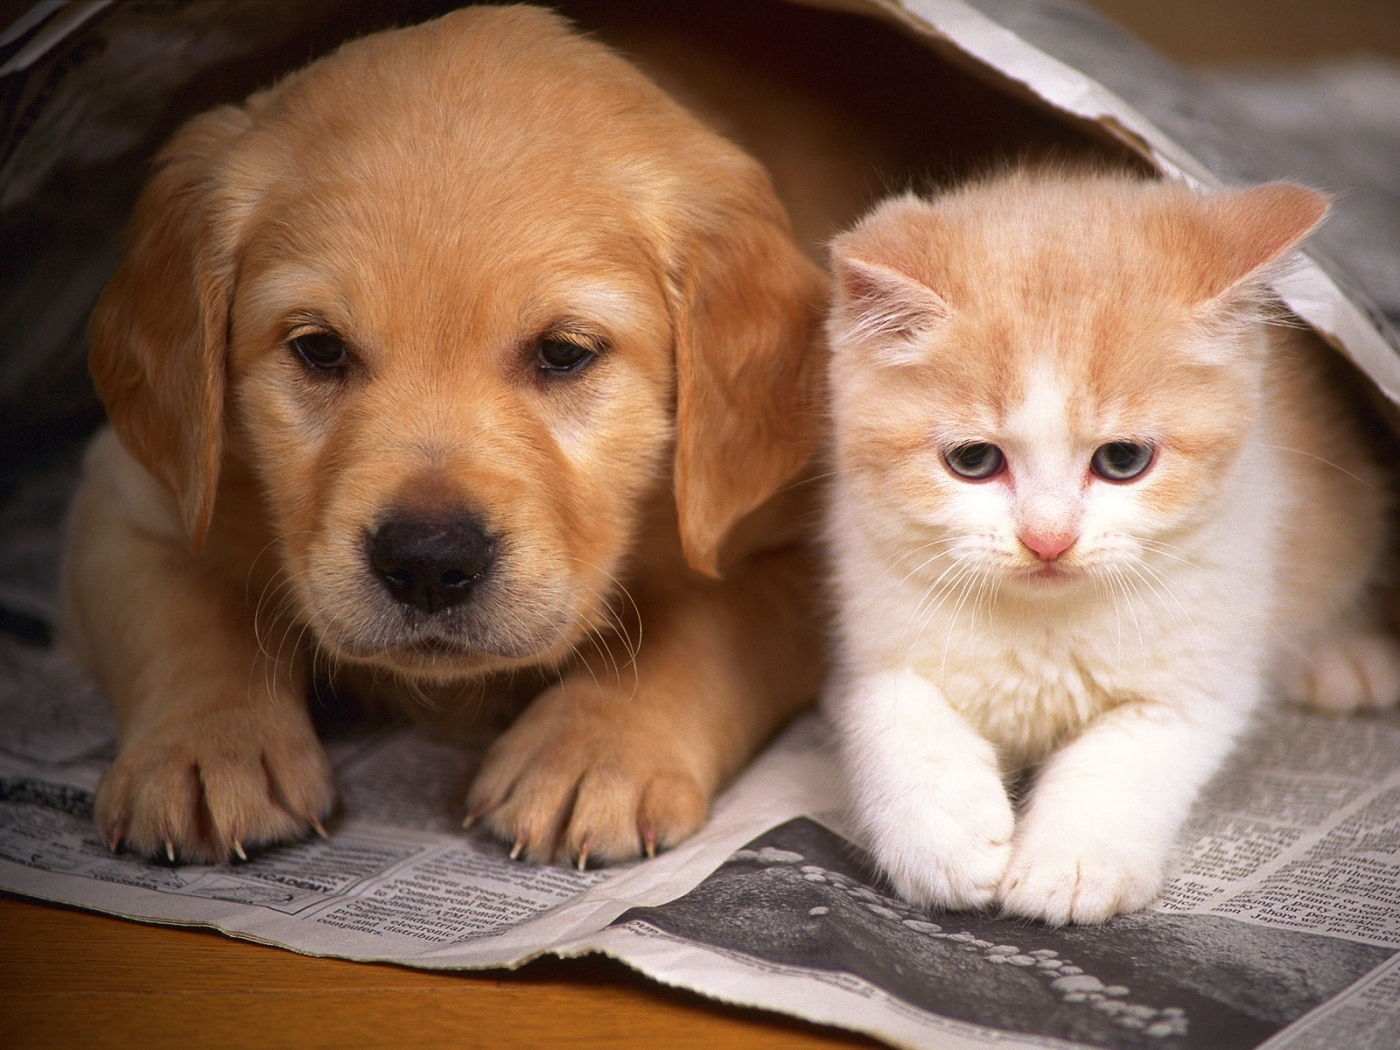 Скачать обои бесплатно Собаки, Кошки (Коты Котики), Животные картинка на рабочий стол ПК